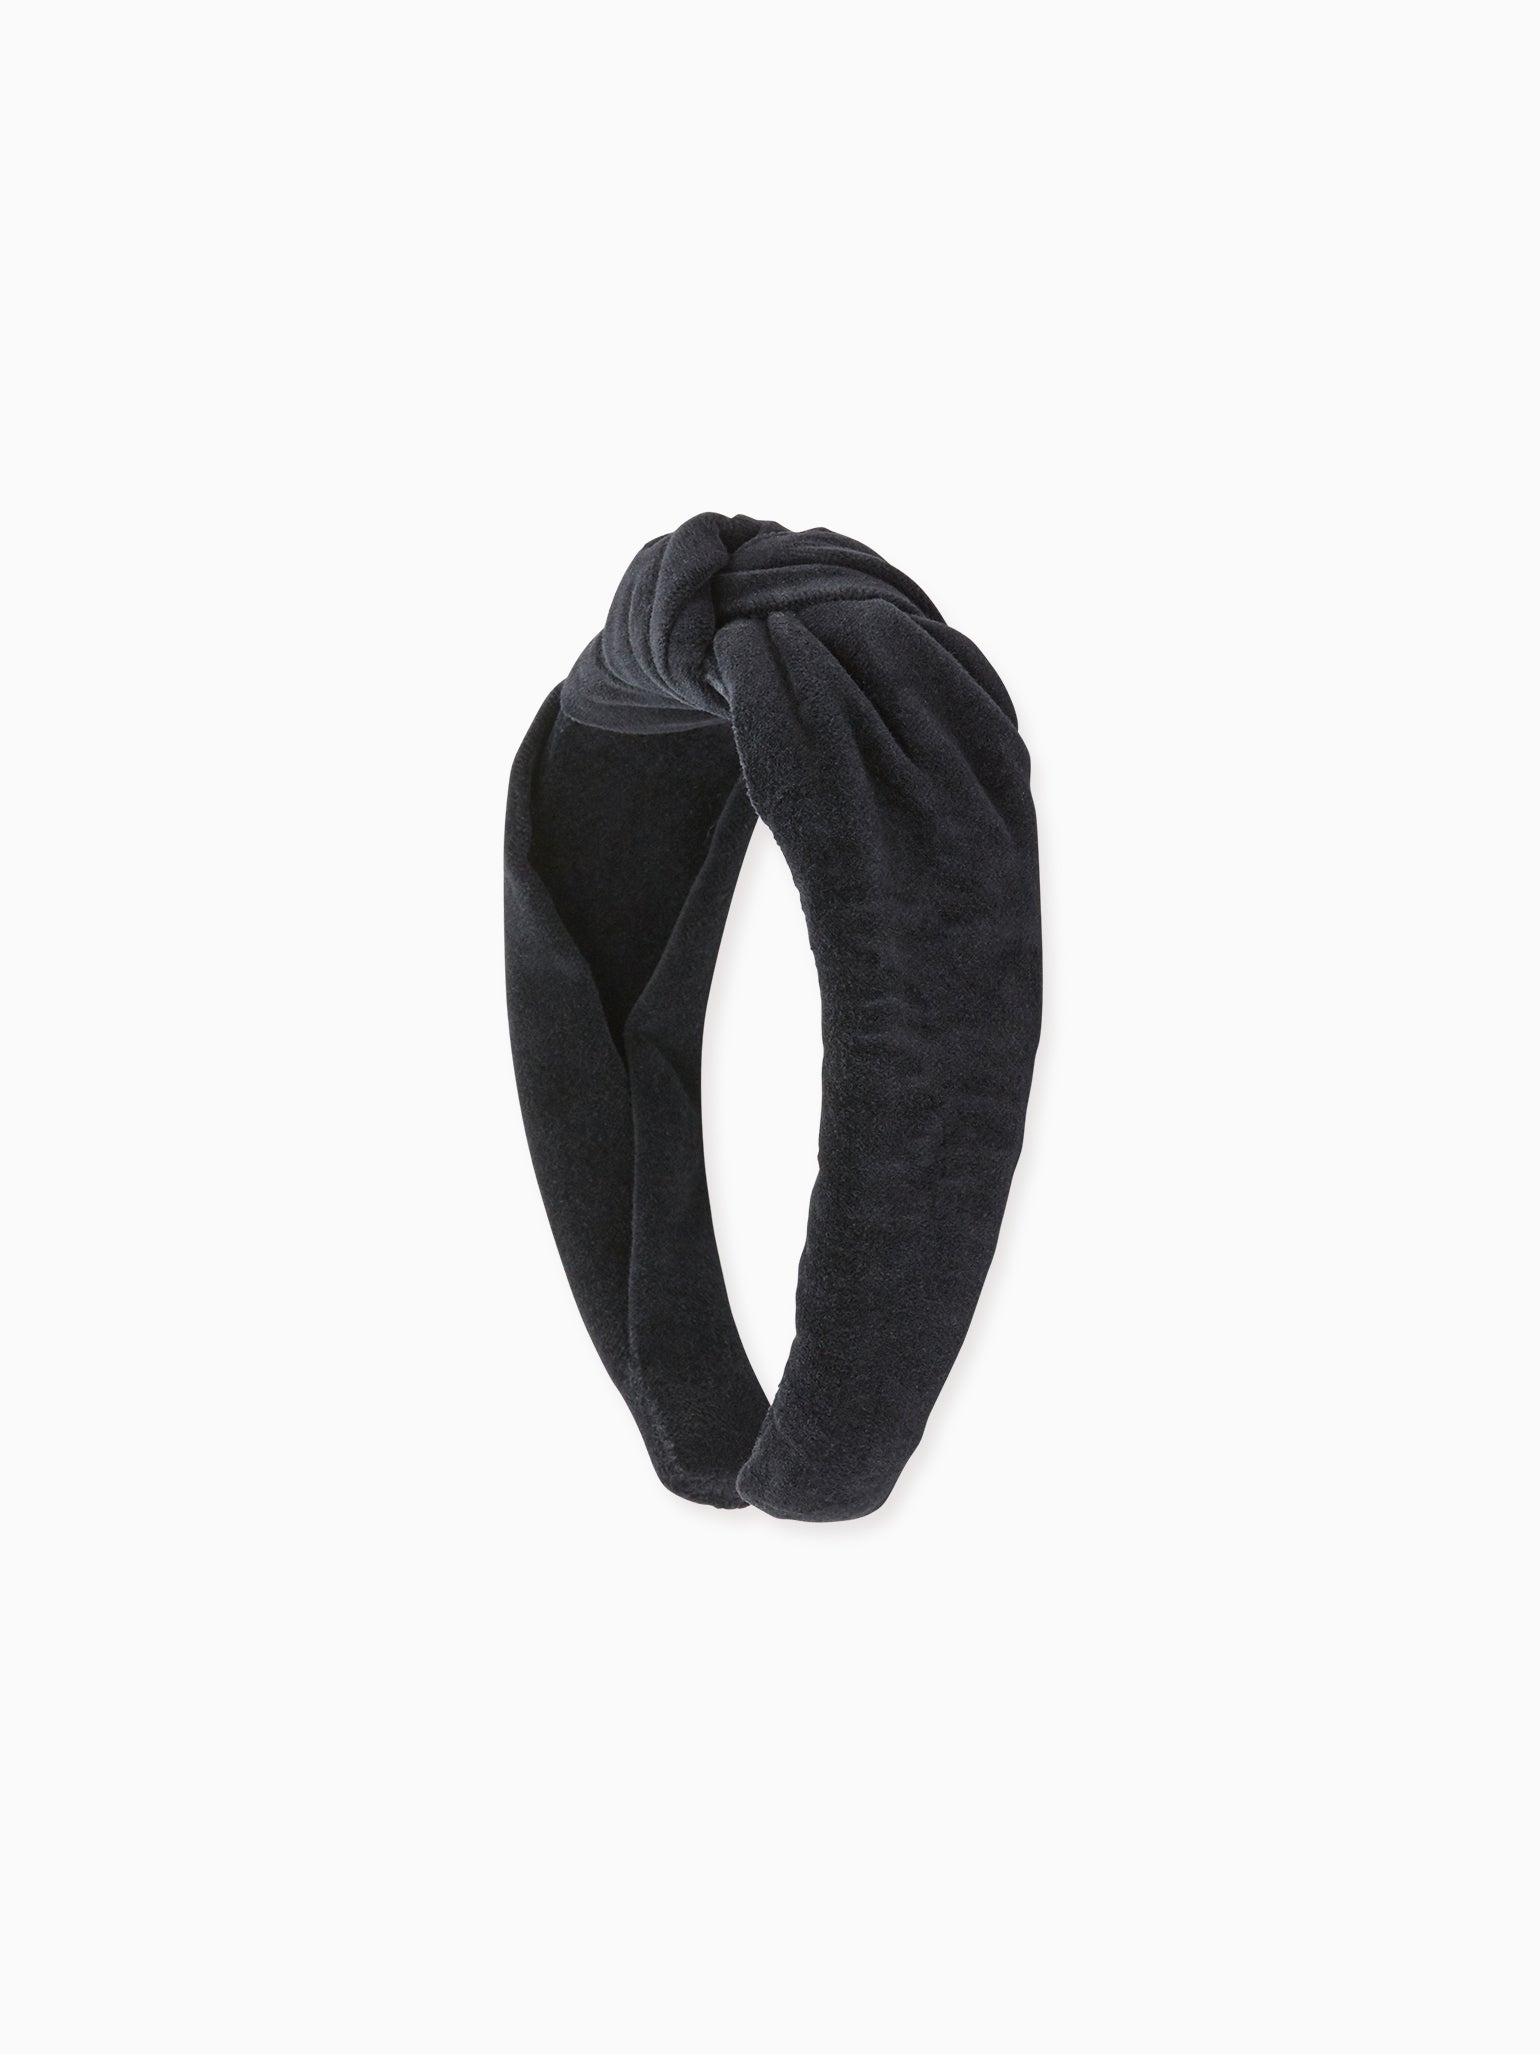 Black Velvet Top Knot Girl Hairband